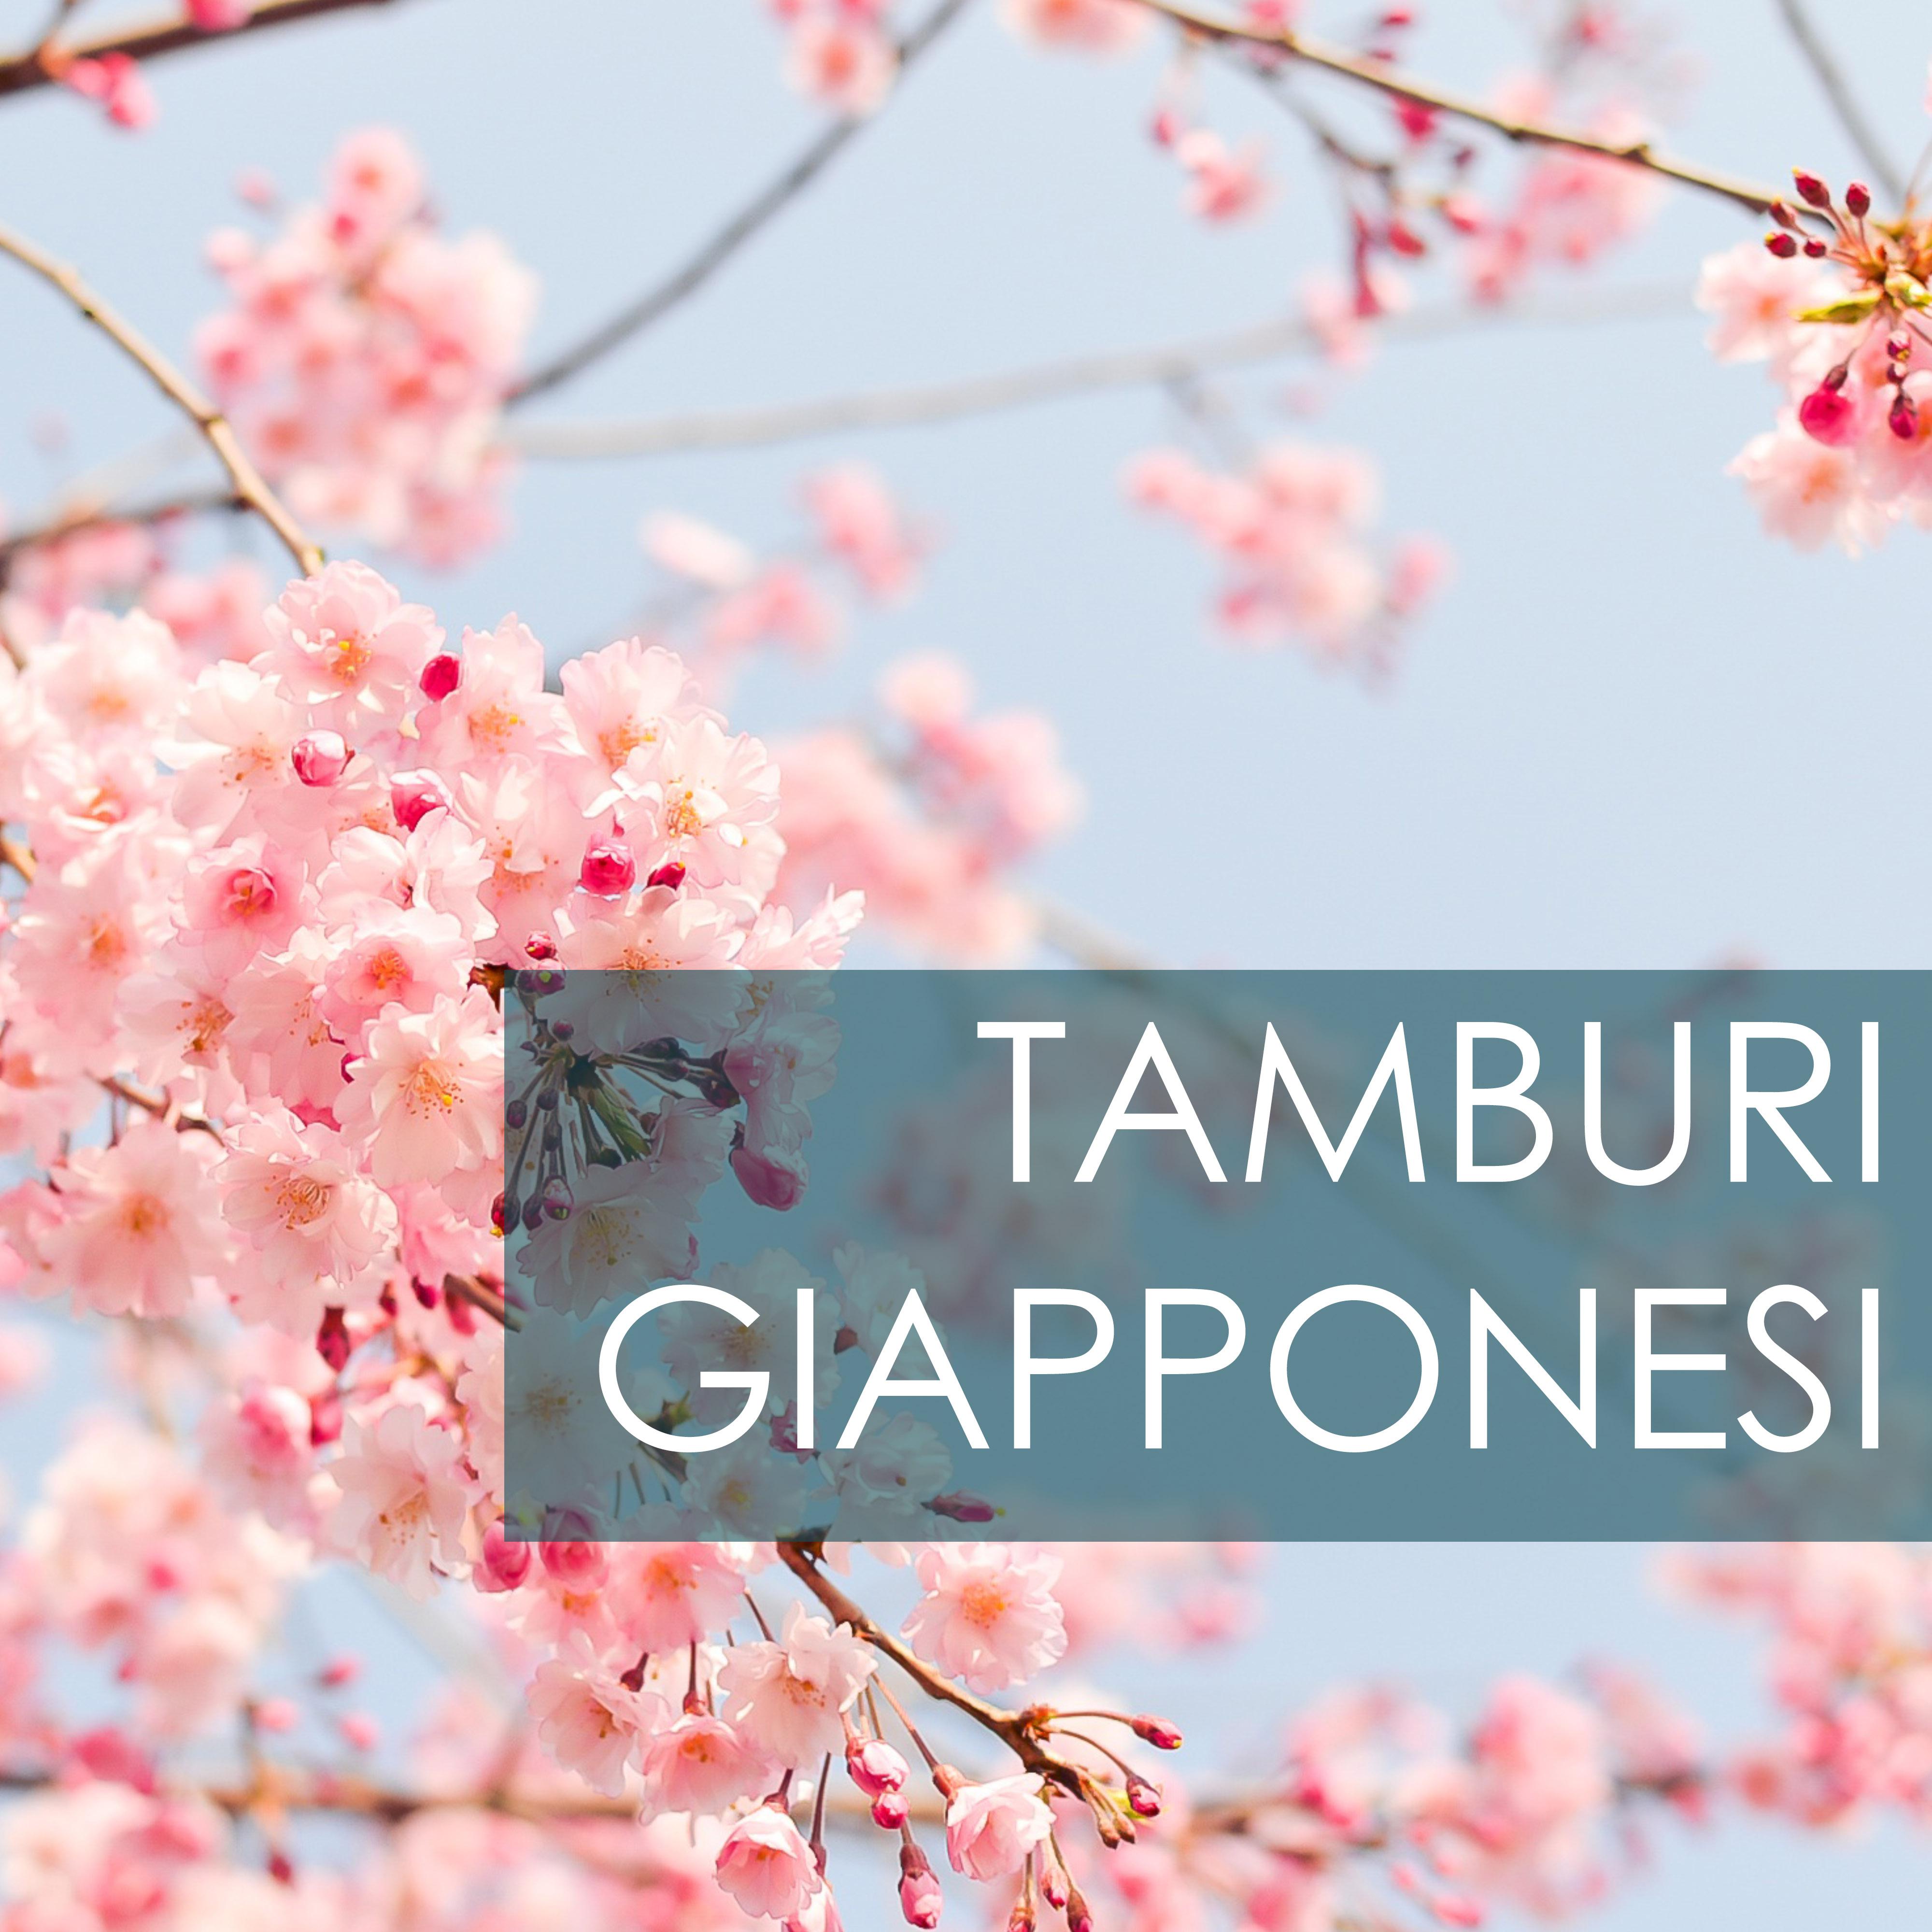 Tamburi Giapponesi - Musica Asiatica a Percussione, Suoni Zen della Natura con Tamburo e Flauto Shakuhachi